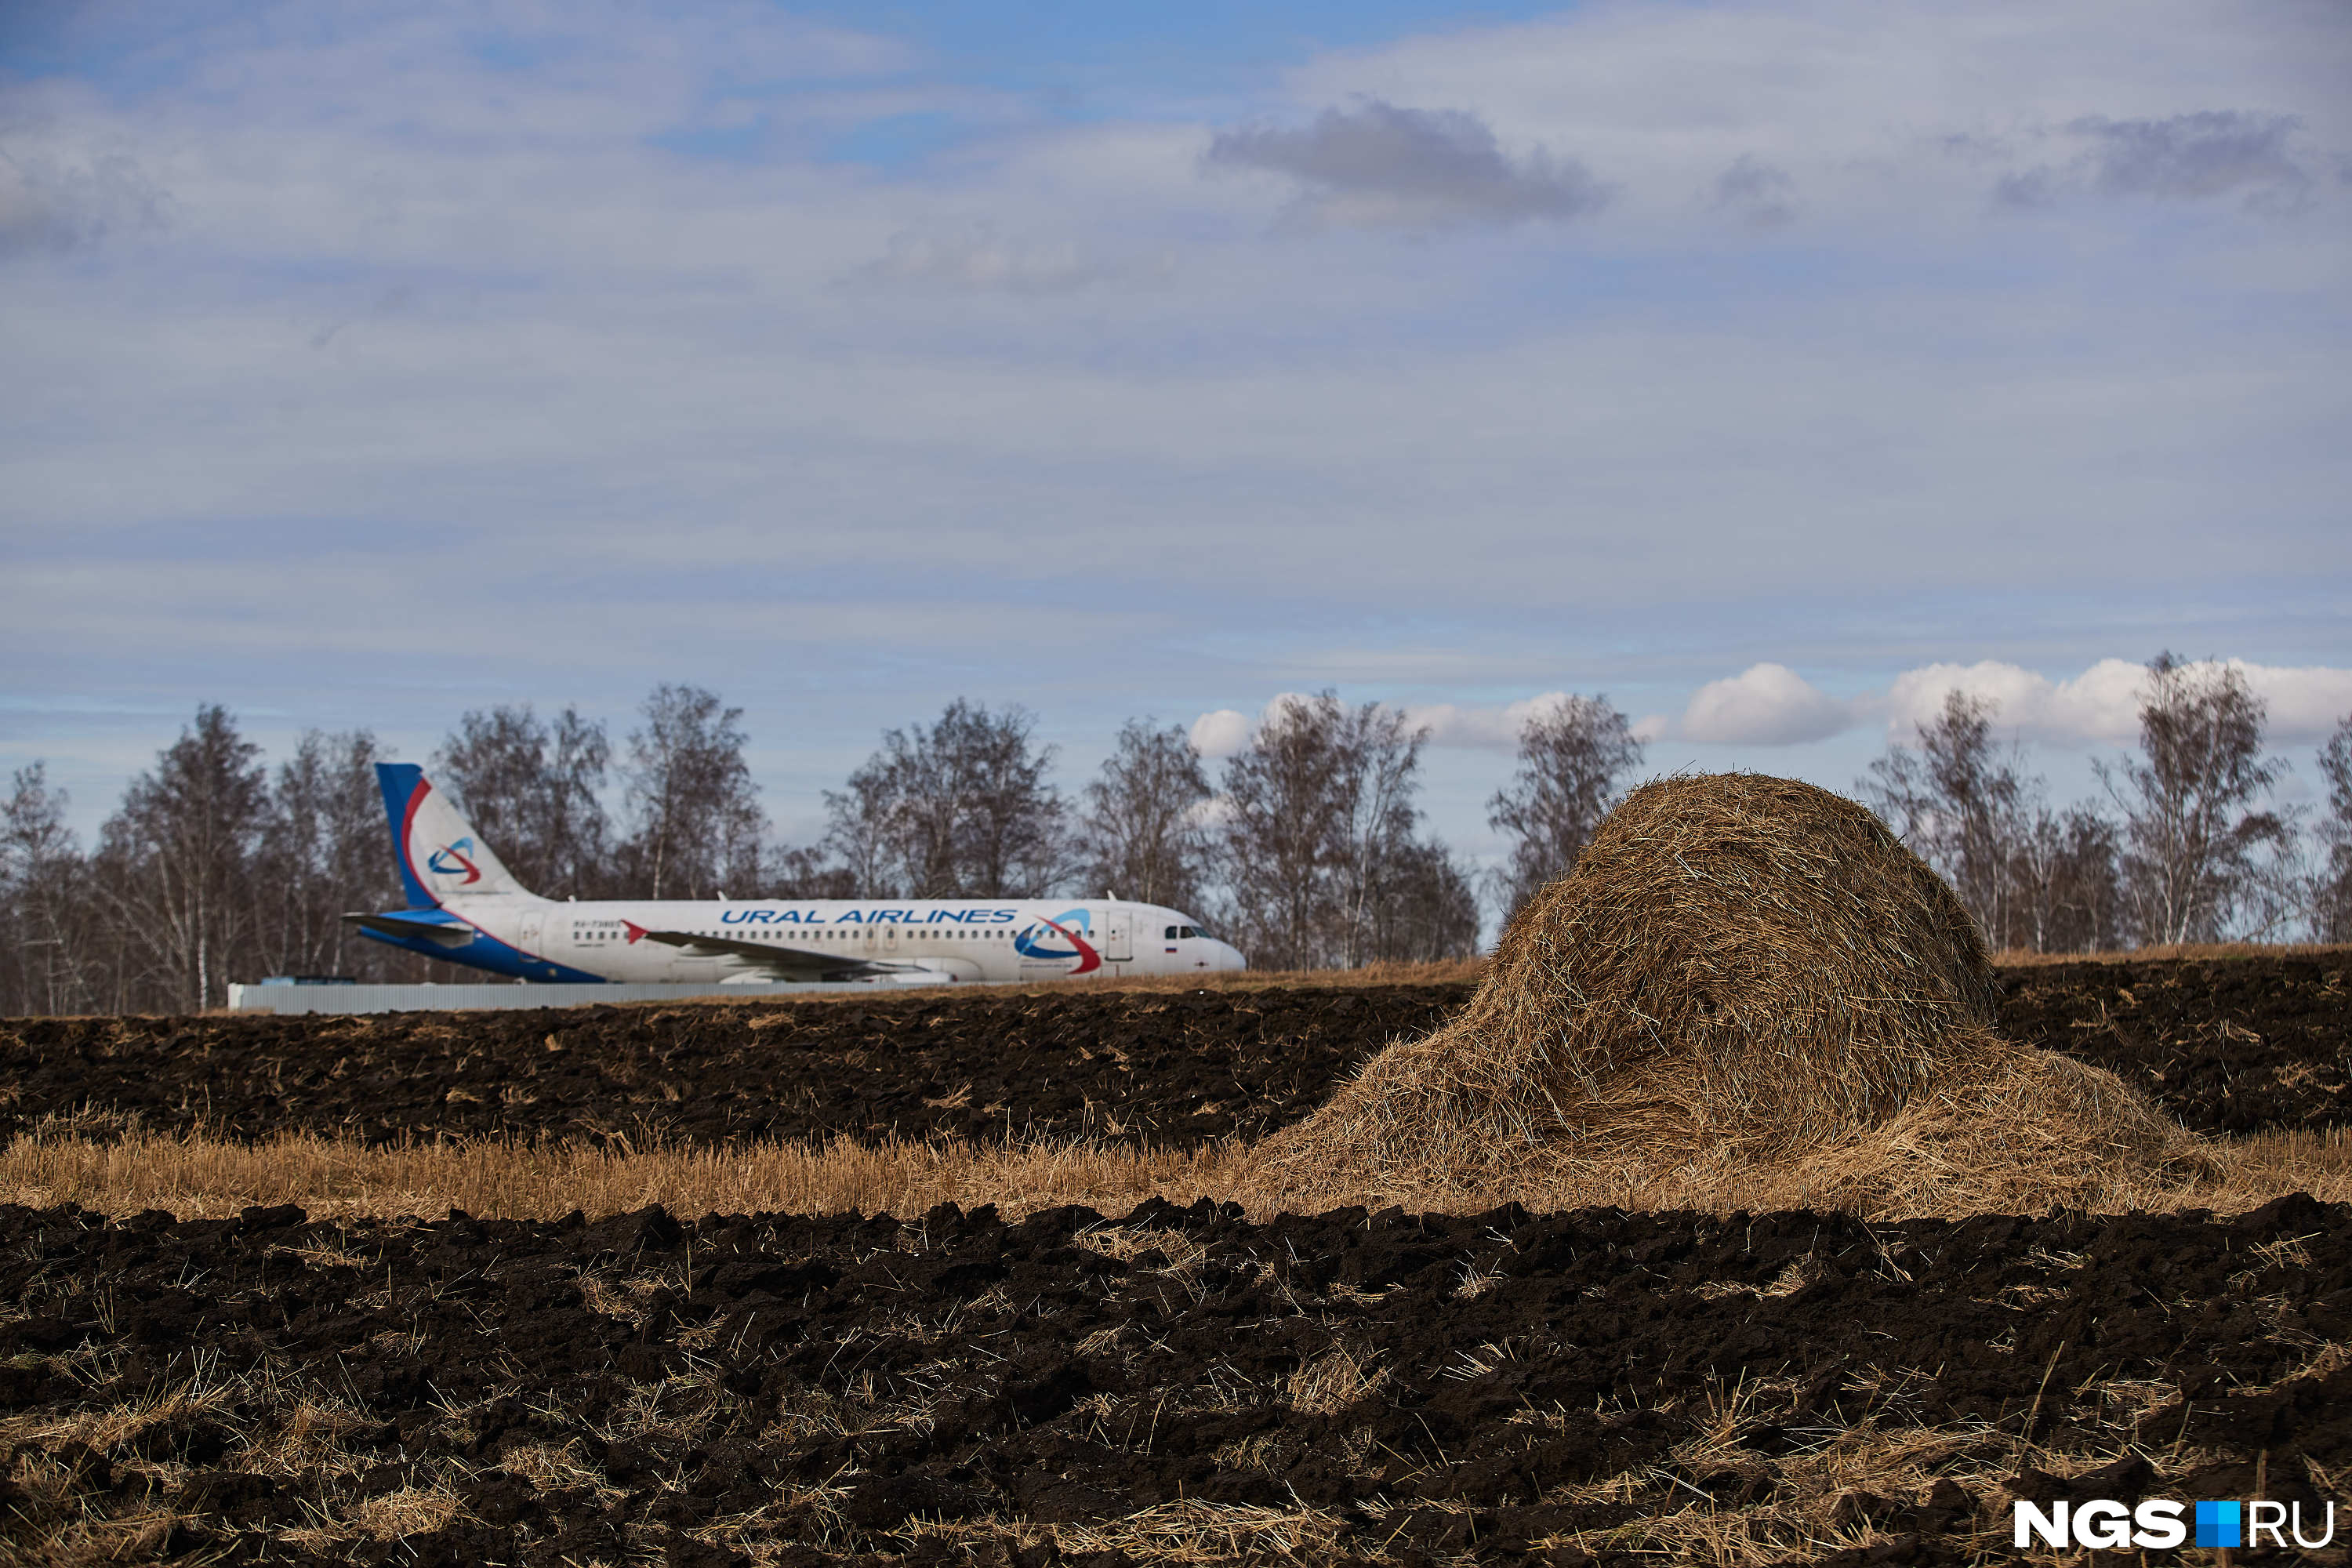 Недалеко от самолета лежит стог, рядом с лайнером работники пахать поле не смогут. Авиакомпания пообещала возместить все убытки